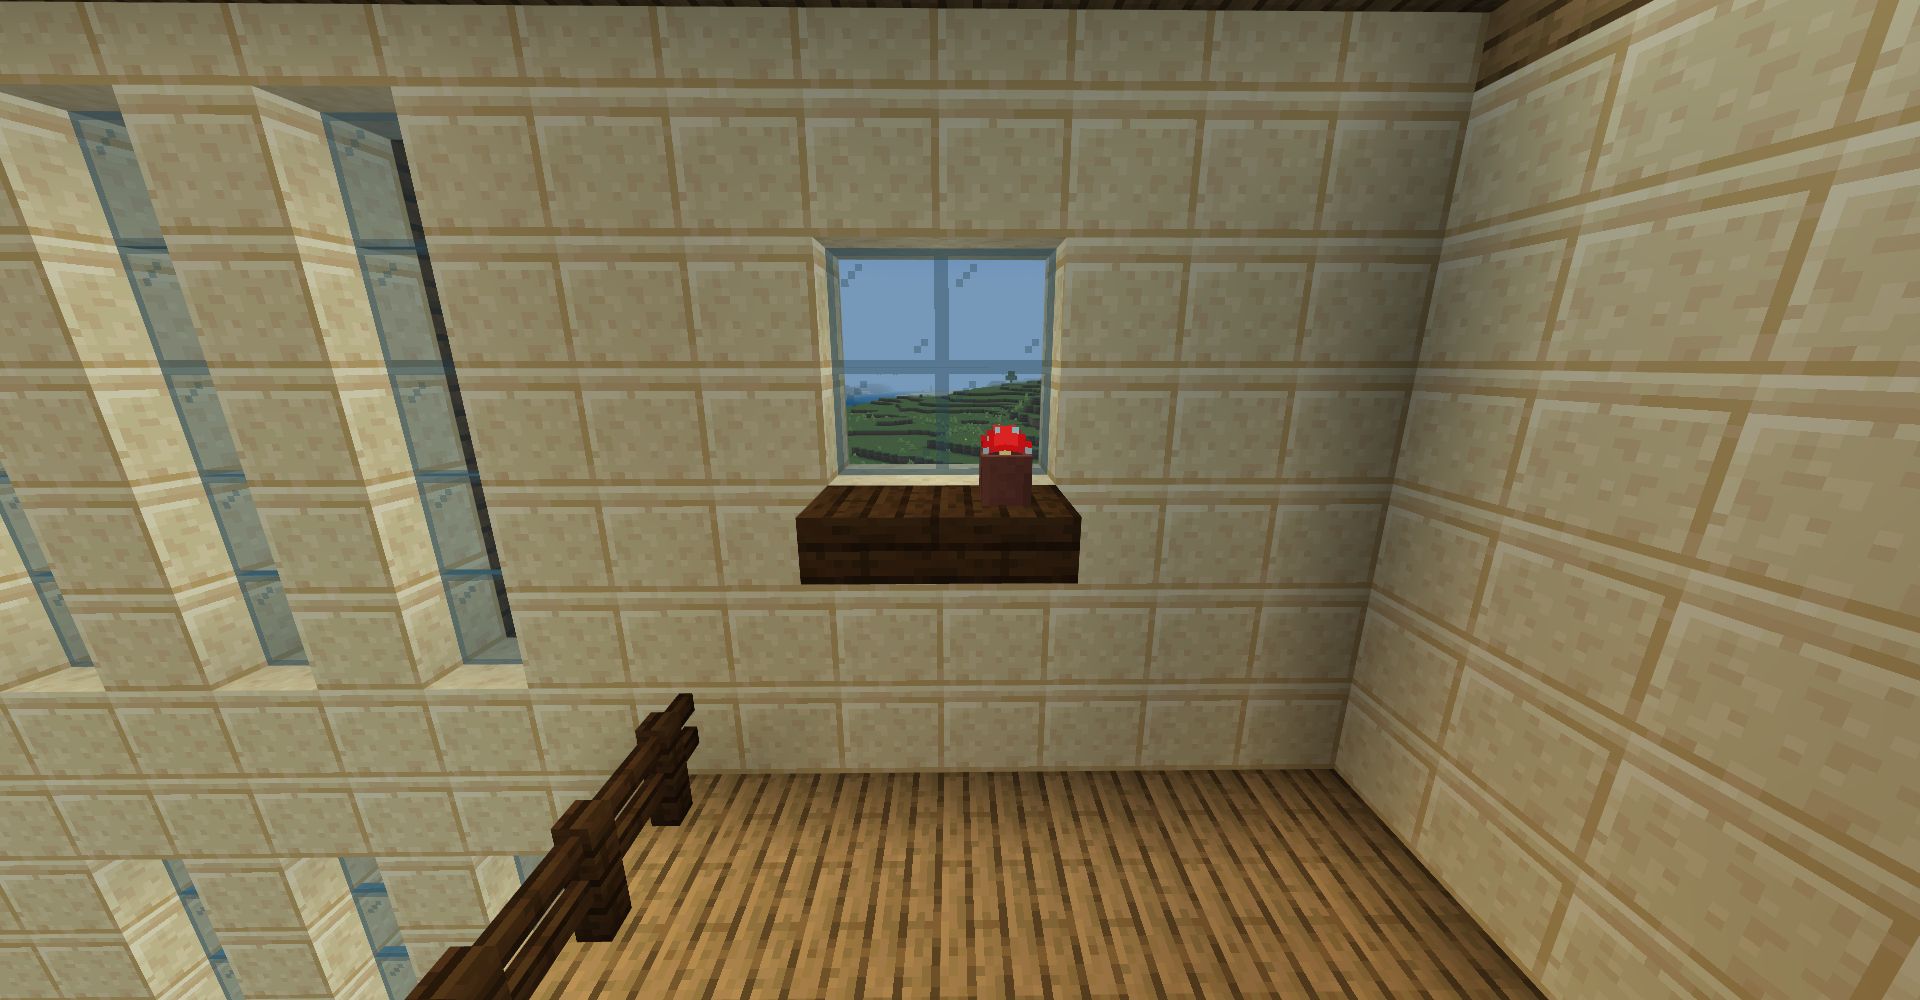 小さな棚の上には「植木鉢」「赤色のキノコ」を設置